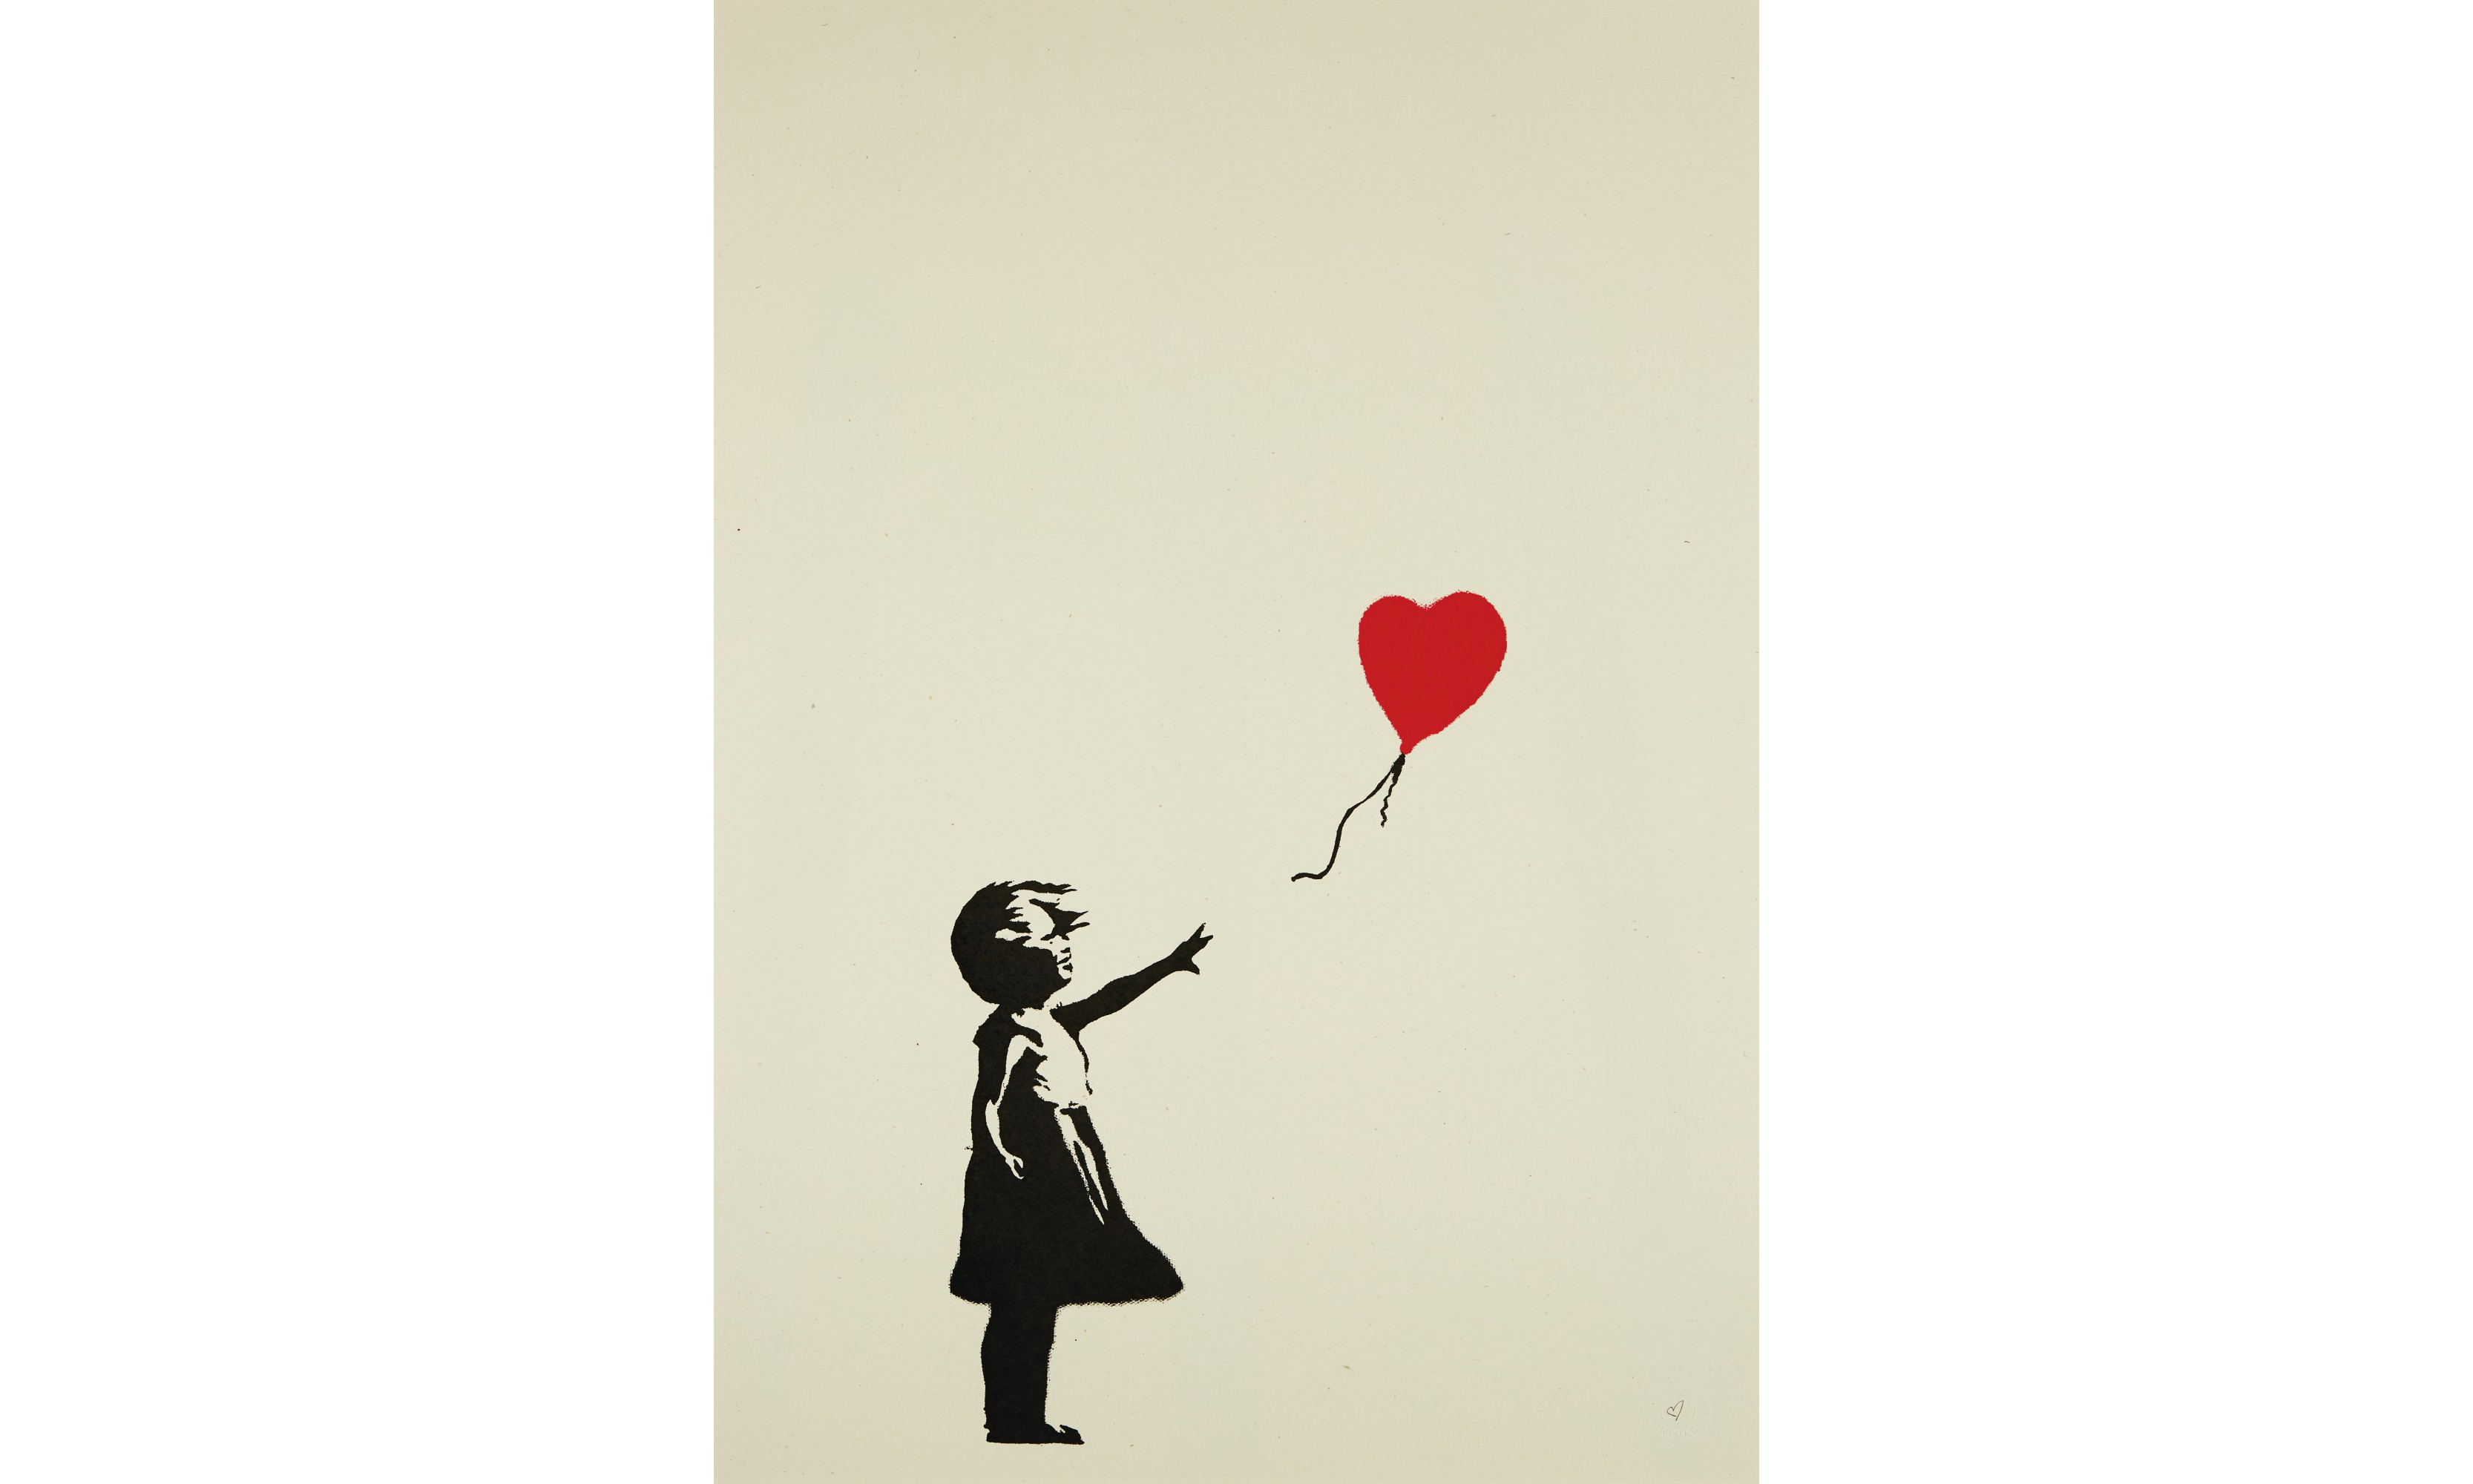 难得入手机会，苏富比举办《Banksy|Online》拍卖会